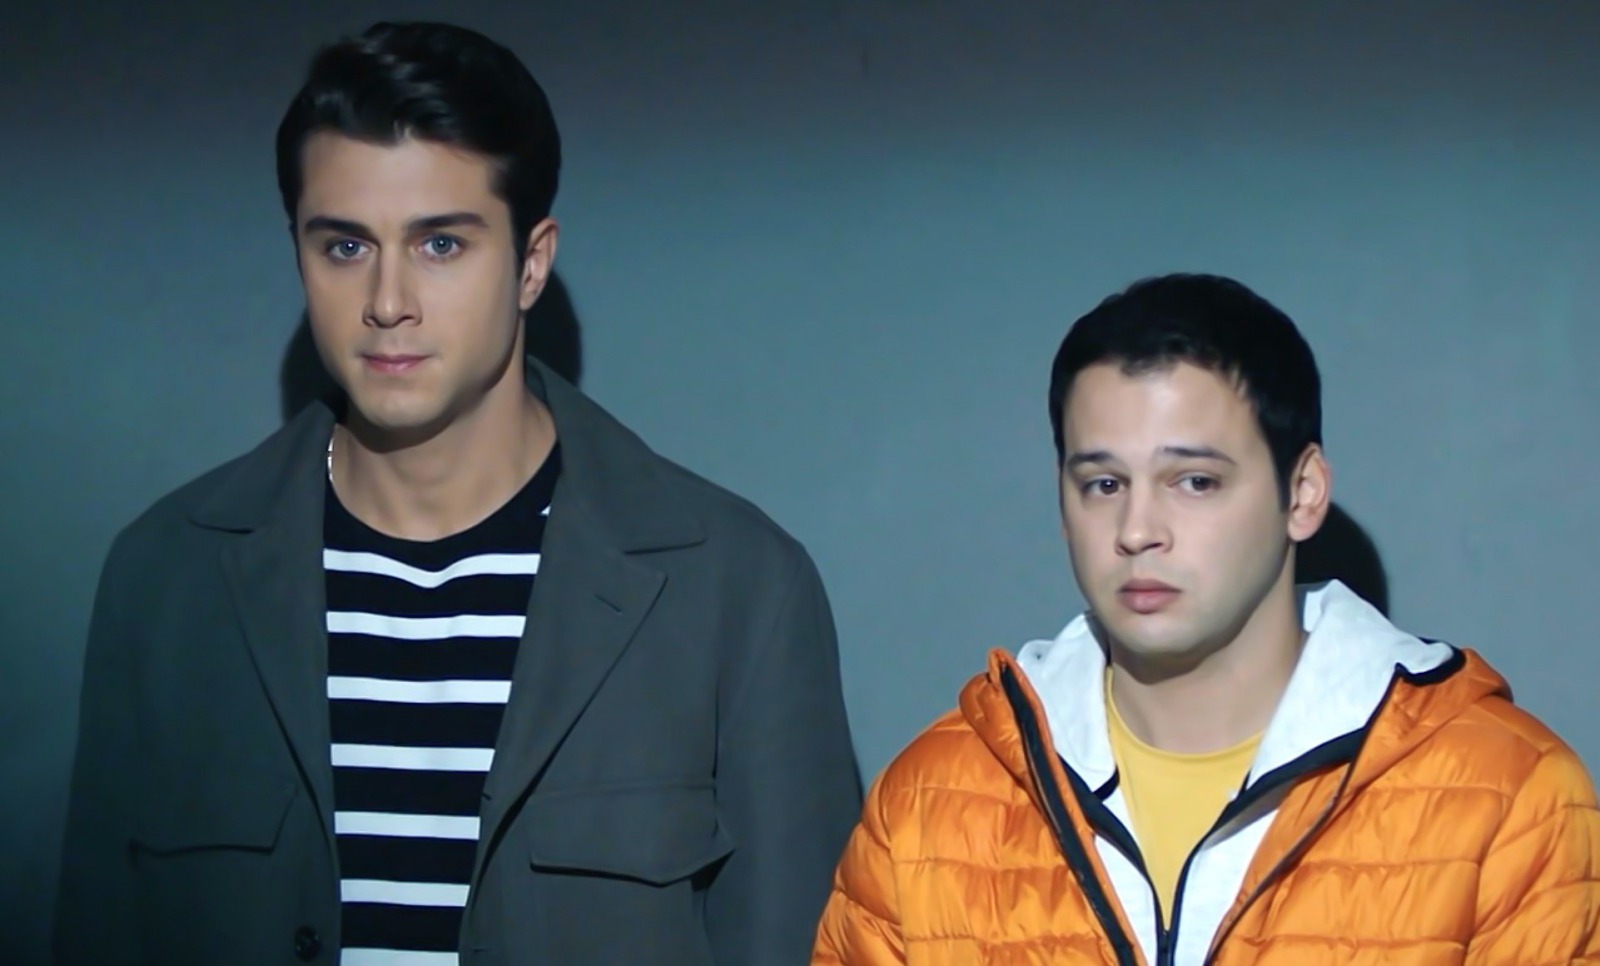 Doruk y Oğulcan son detenidos acusados de robo, en Hermanos